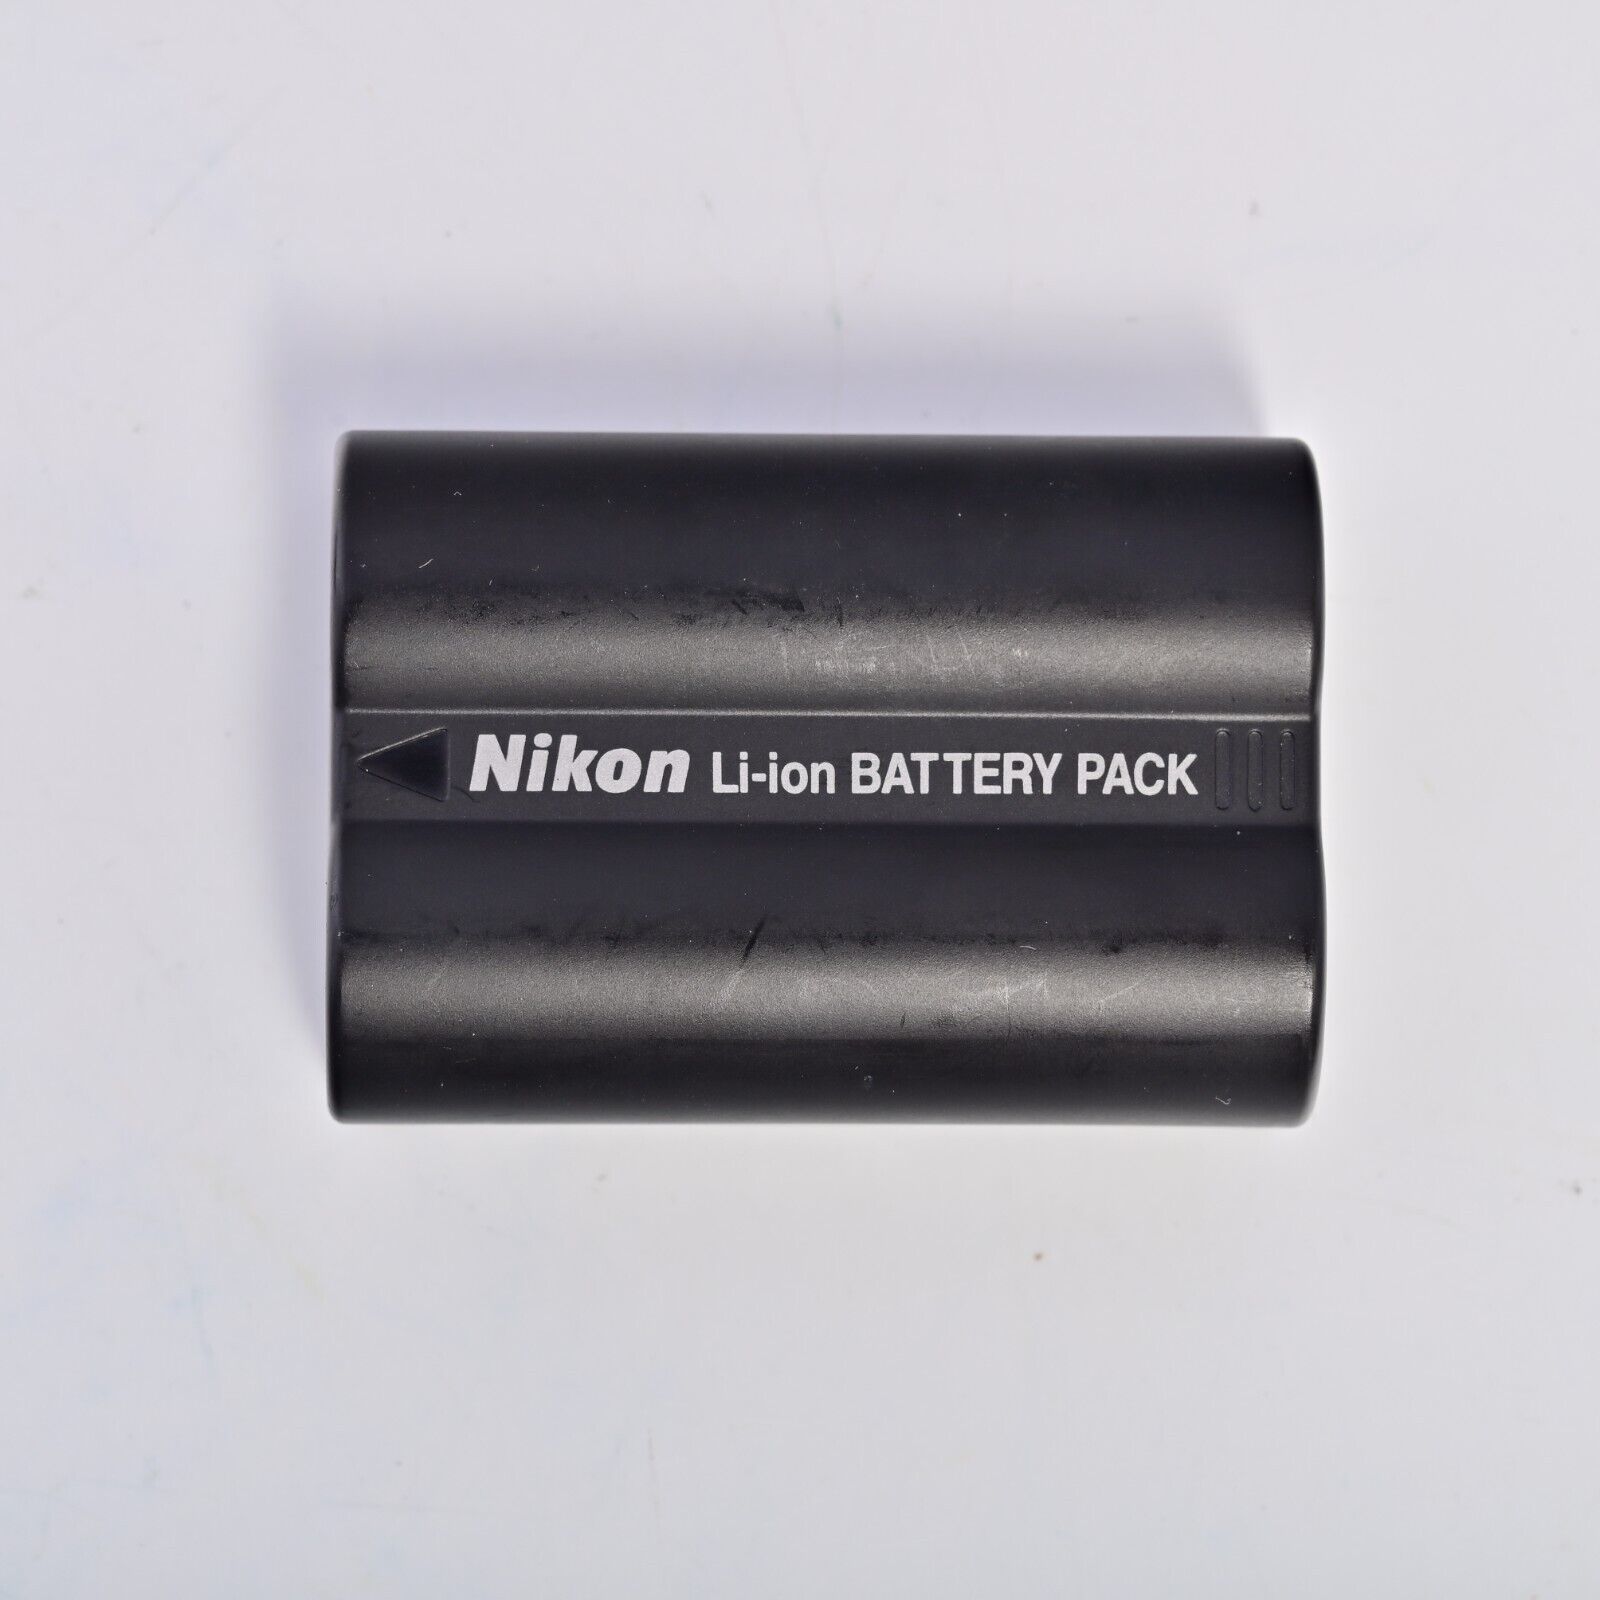 Primary image for Genuine Nikon EN-EL3a 7.4v 1500mAh Battery fits D50 D70 D100 Digital SLRs